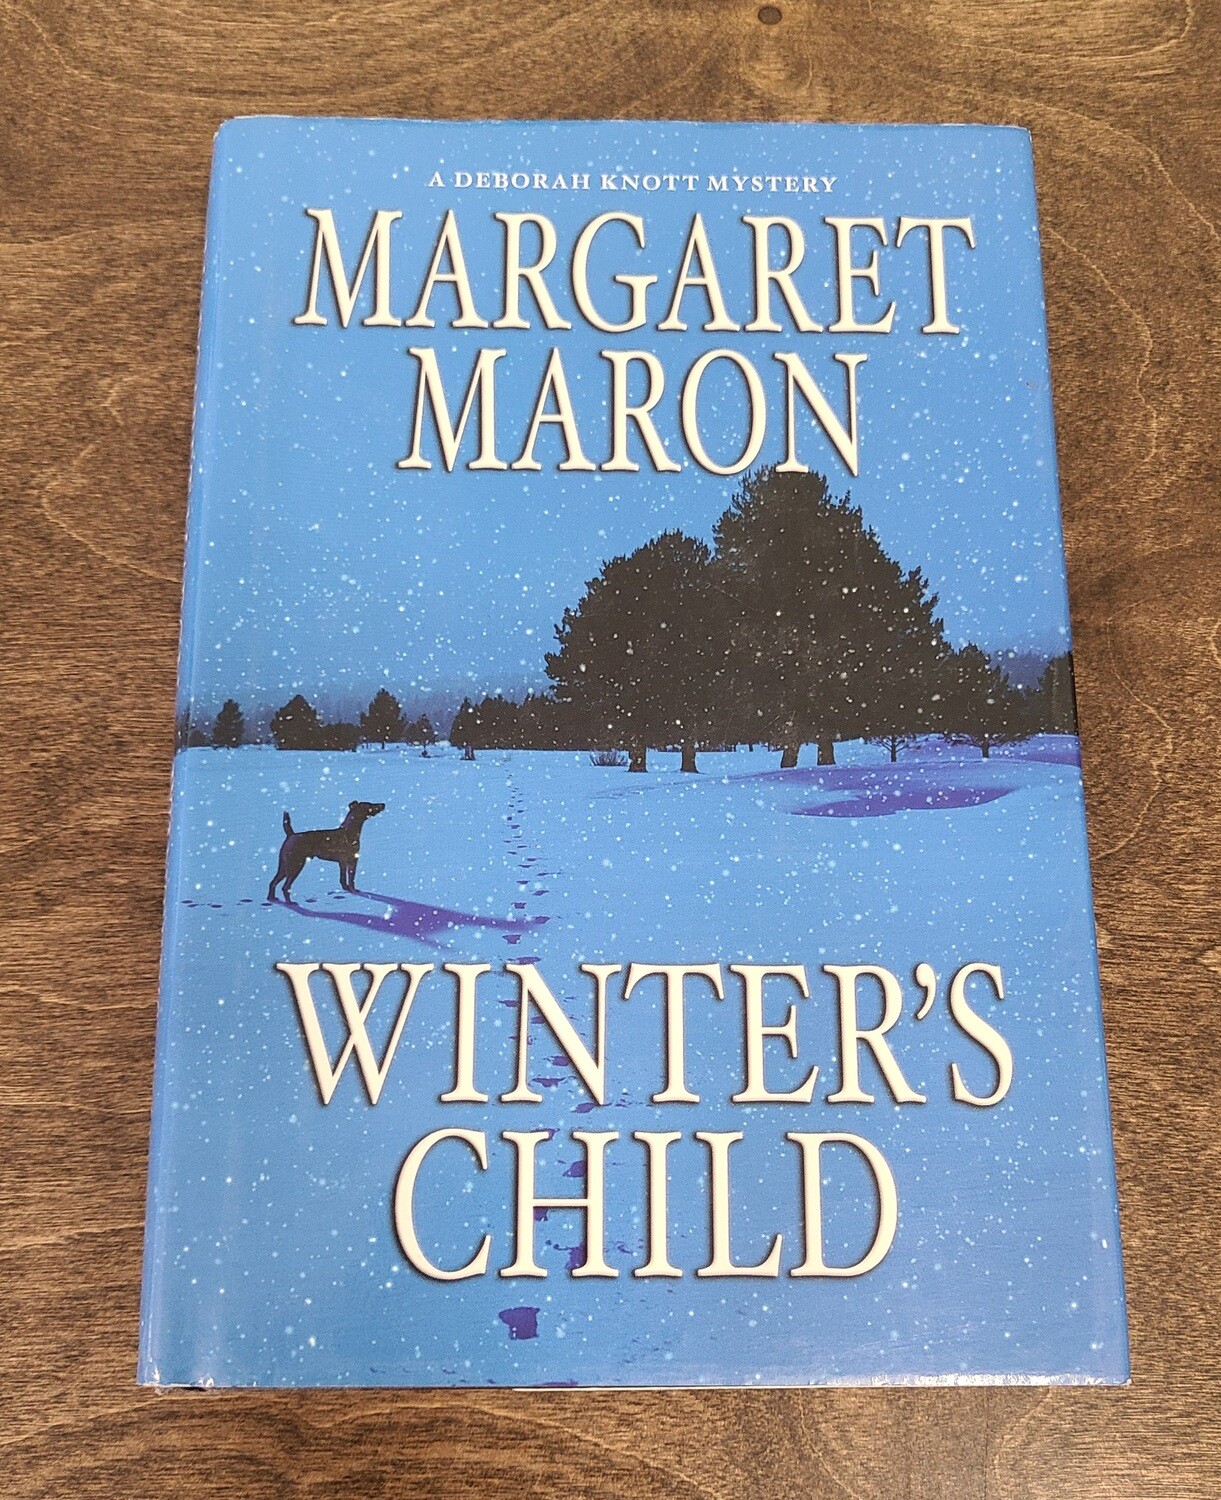 Winter's Child by Margaret Maron